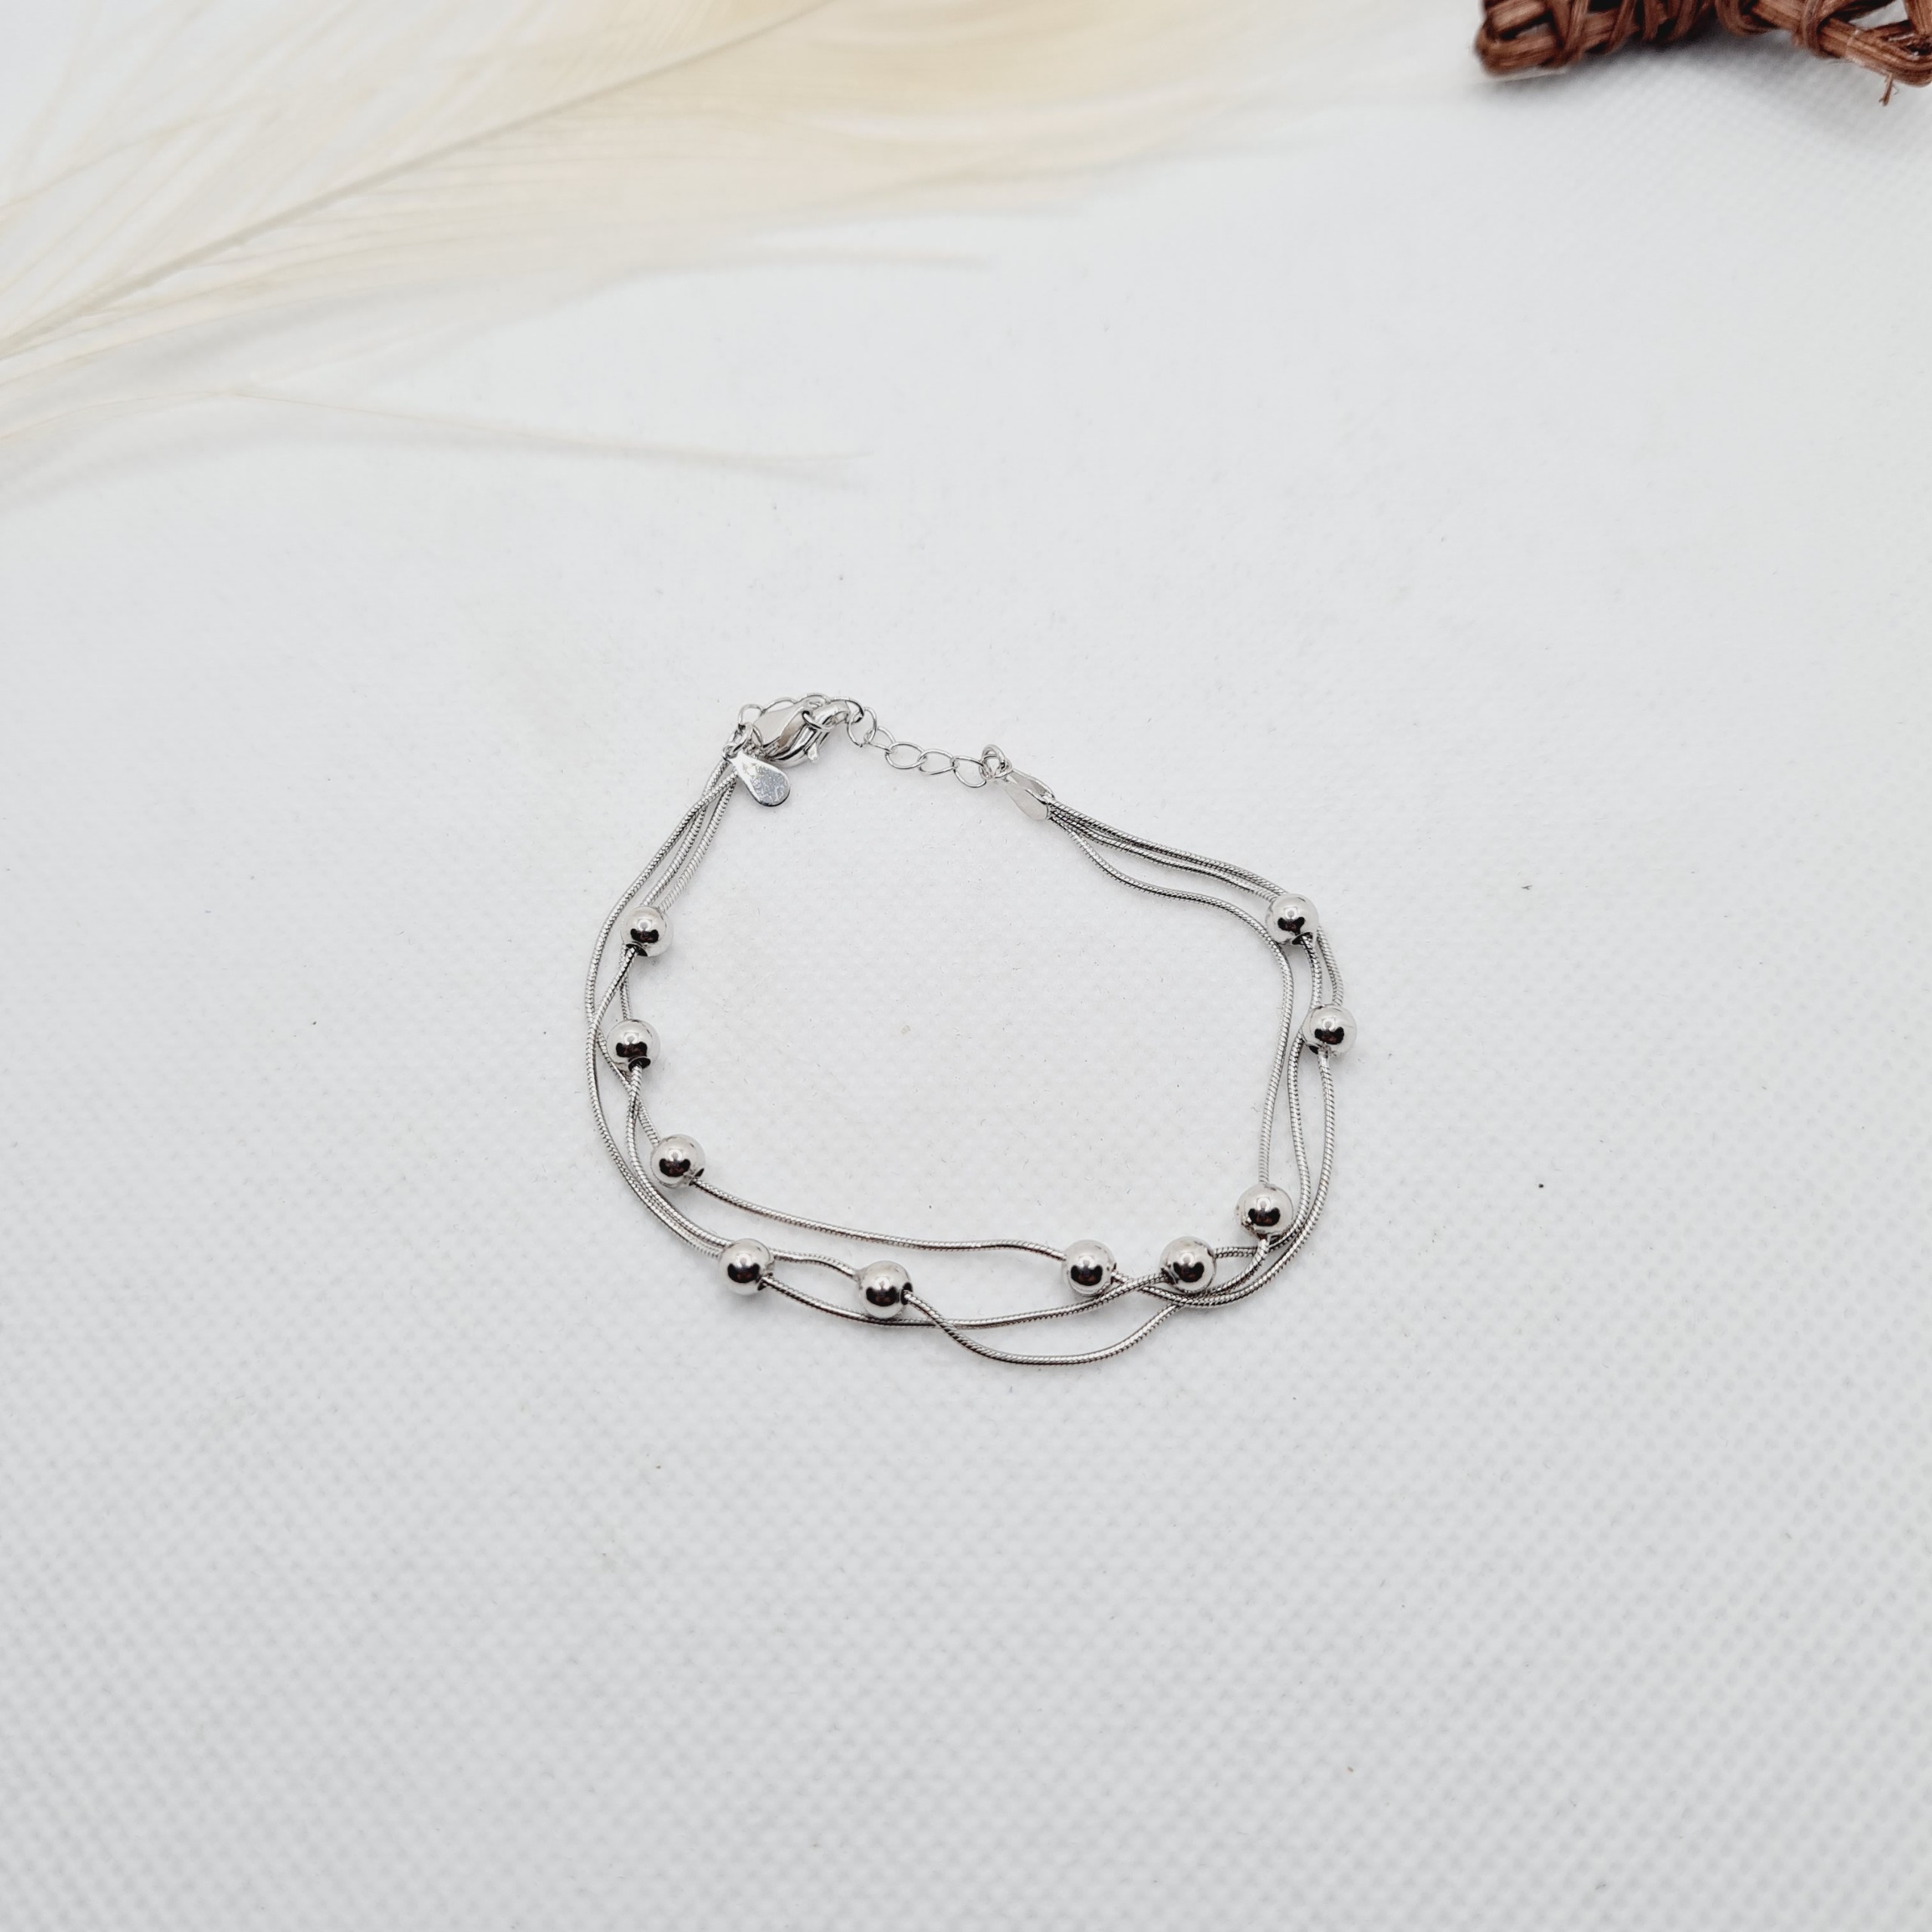 Lắc tay 3 dây kết hợp bi nhỏ chất liệu bạc 925 thời trang phụ kiện trang sức nữ sang trọng